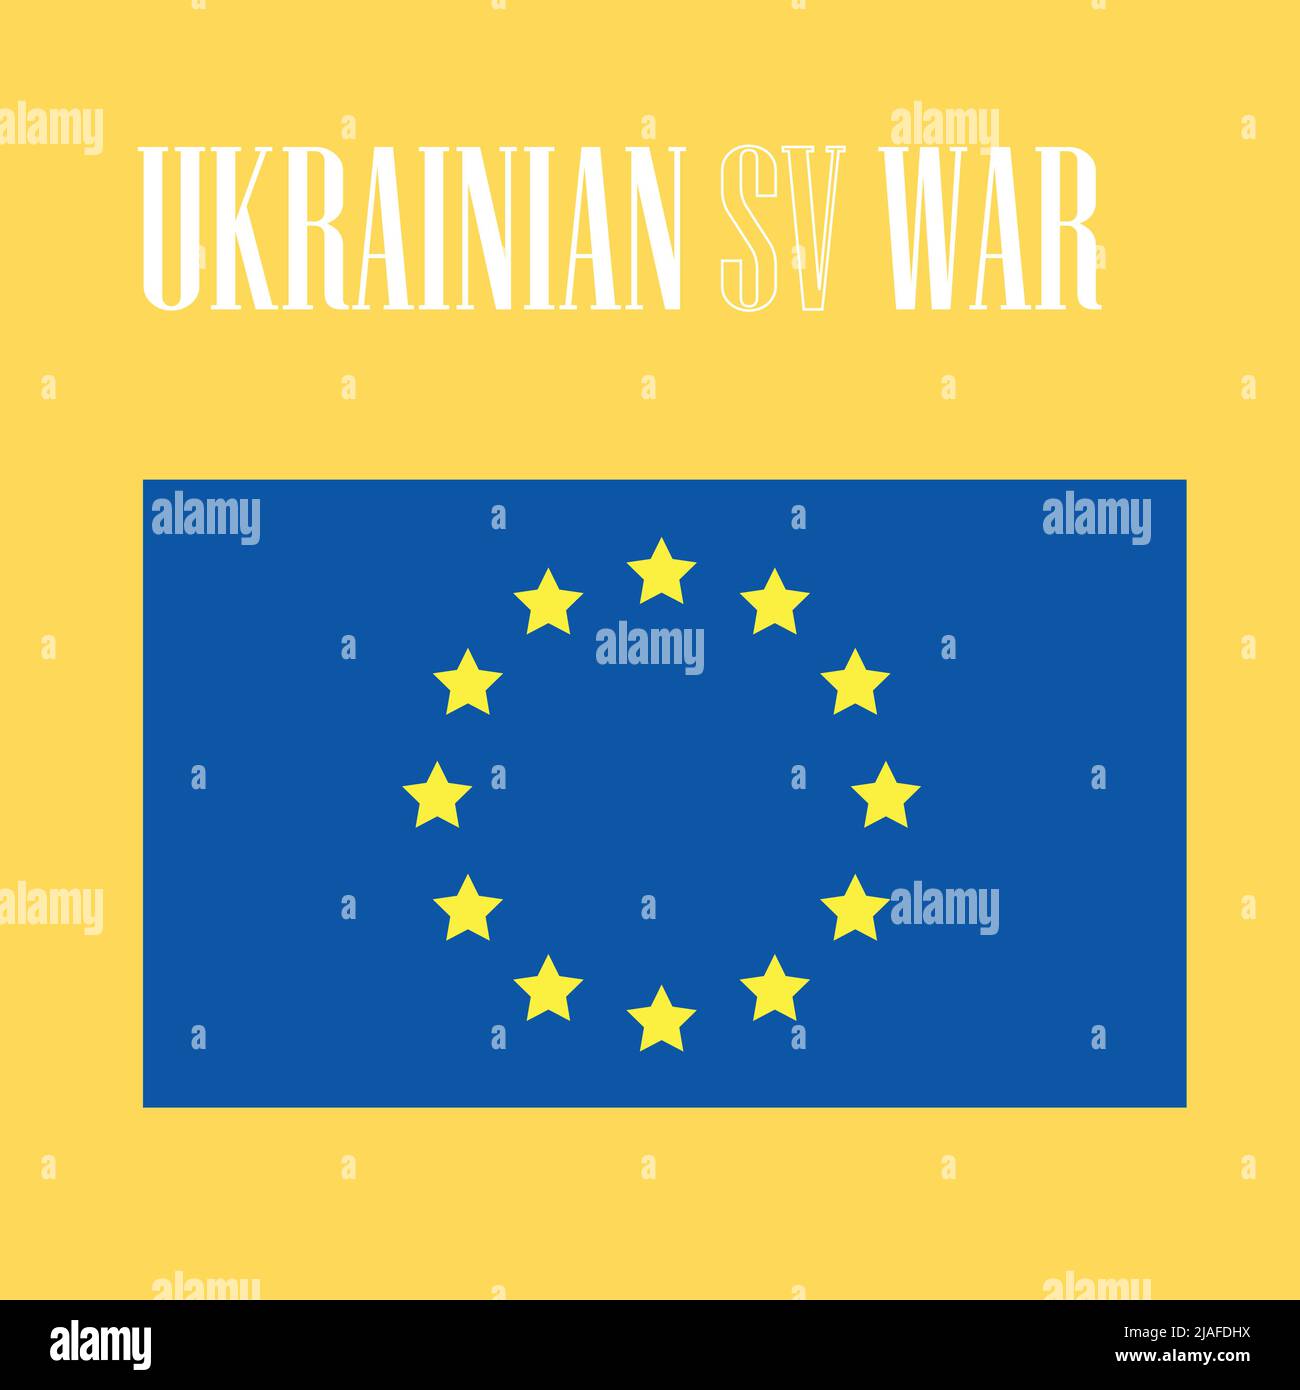 Ukrainisch gegen den Schwamm. Die Ukraine und Europa sind so abhängig geworden. Stock Vektor